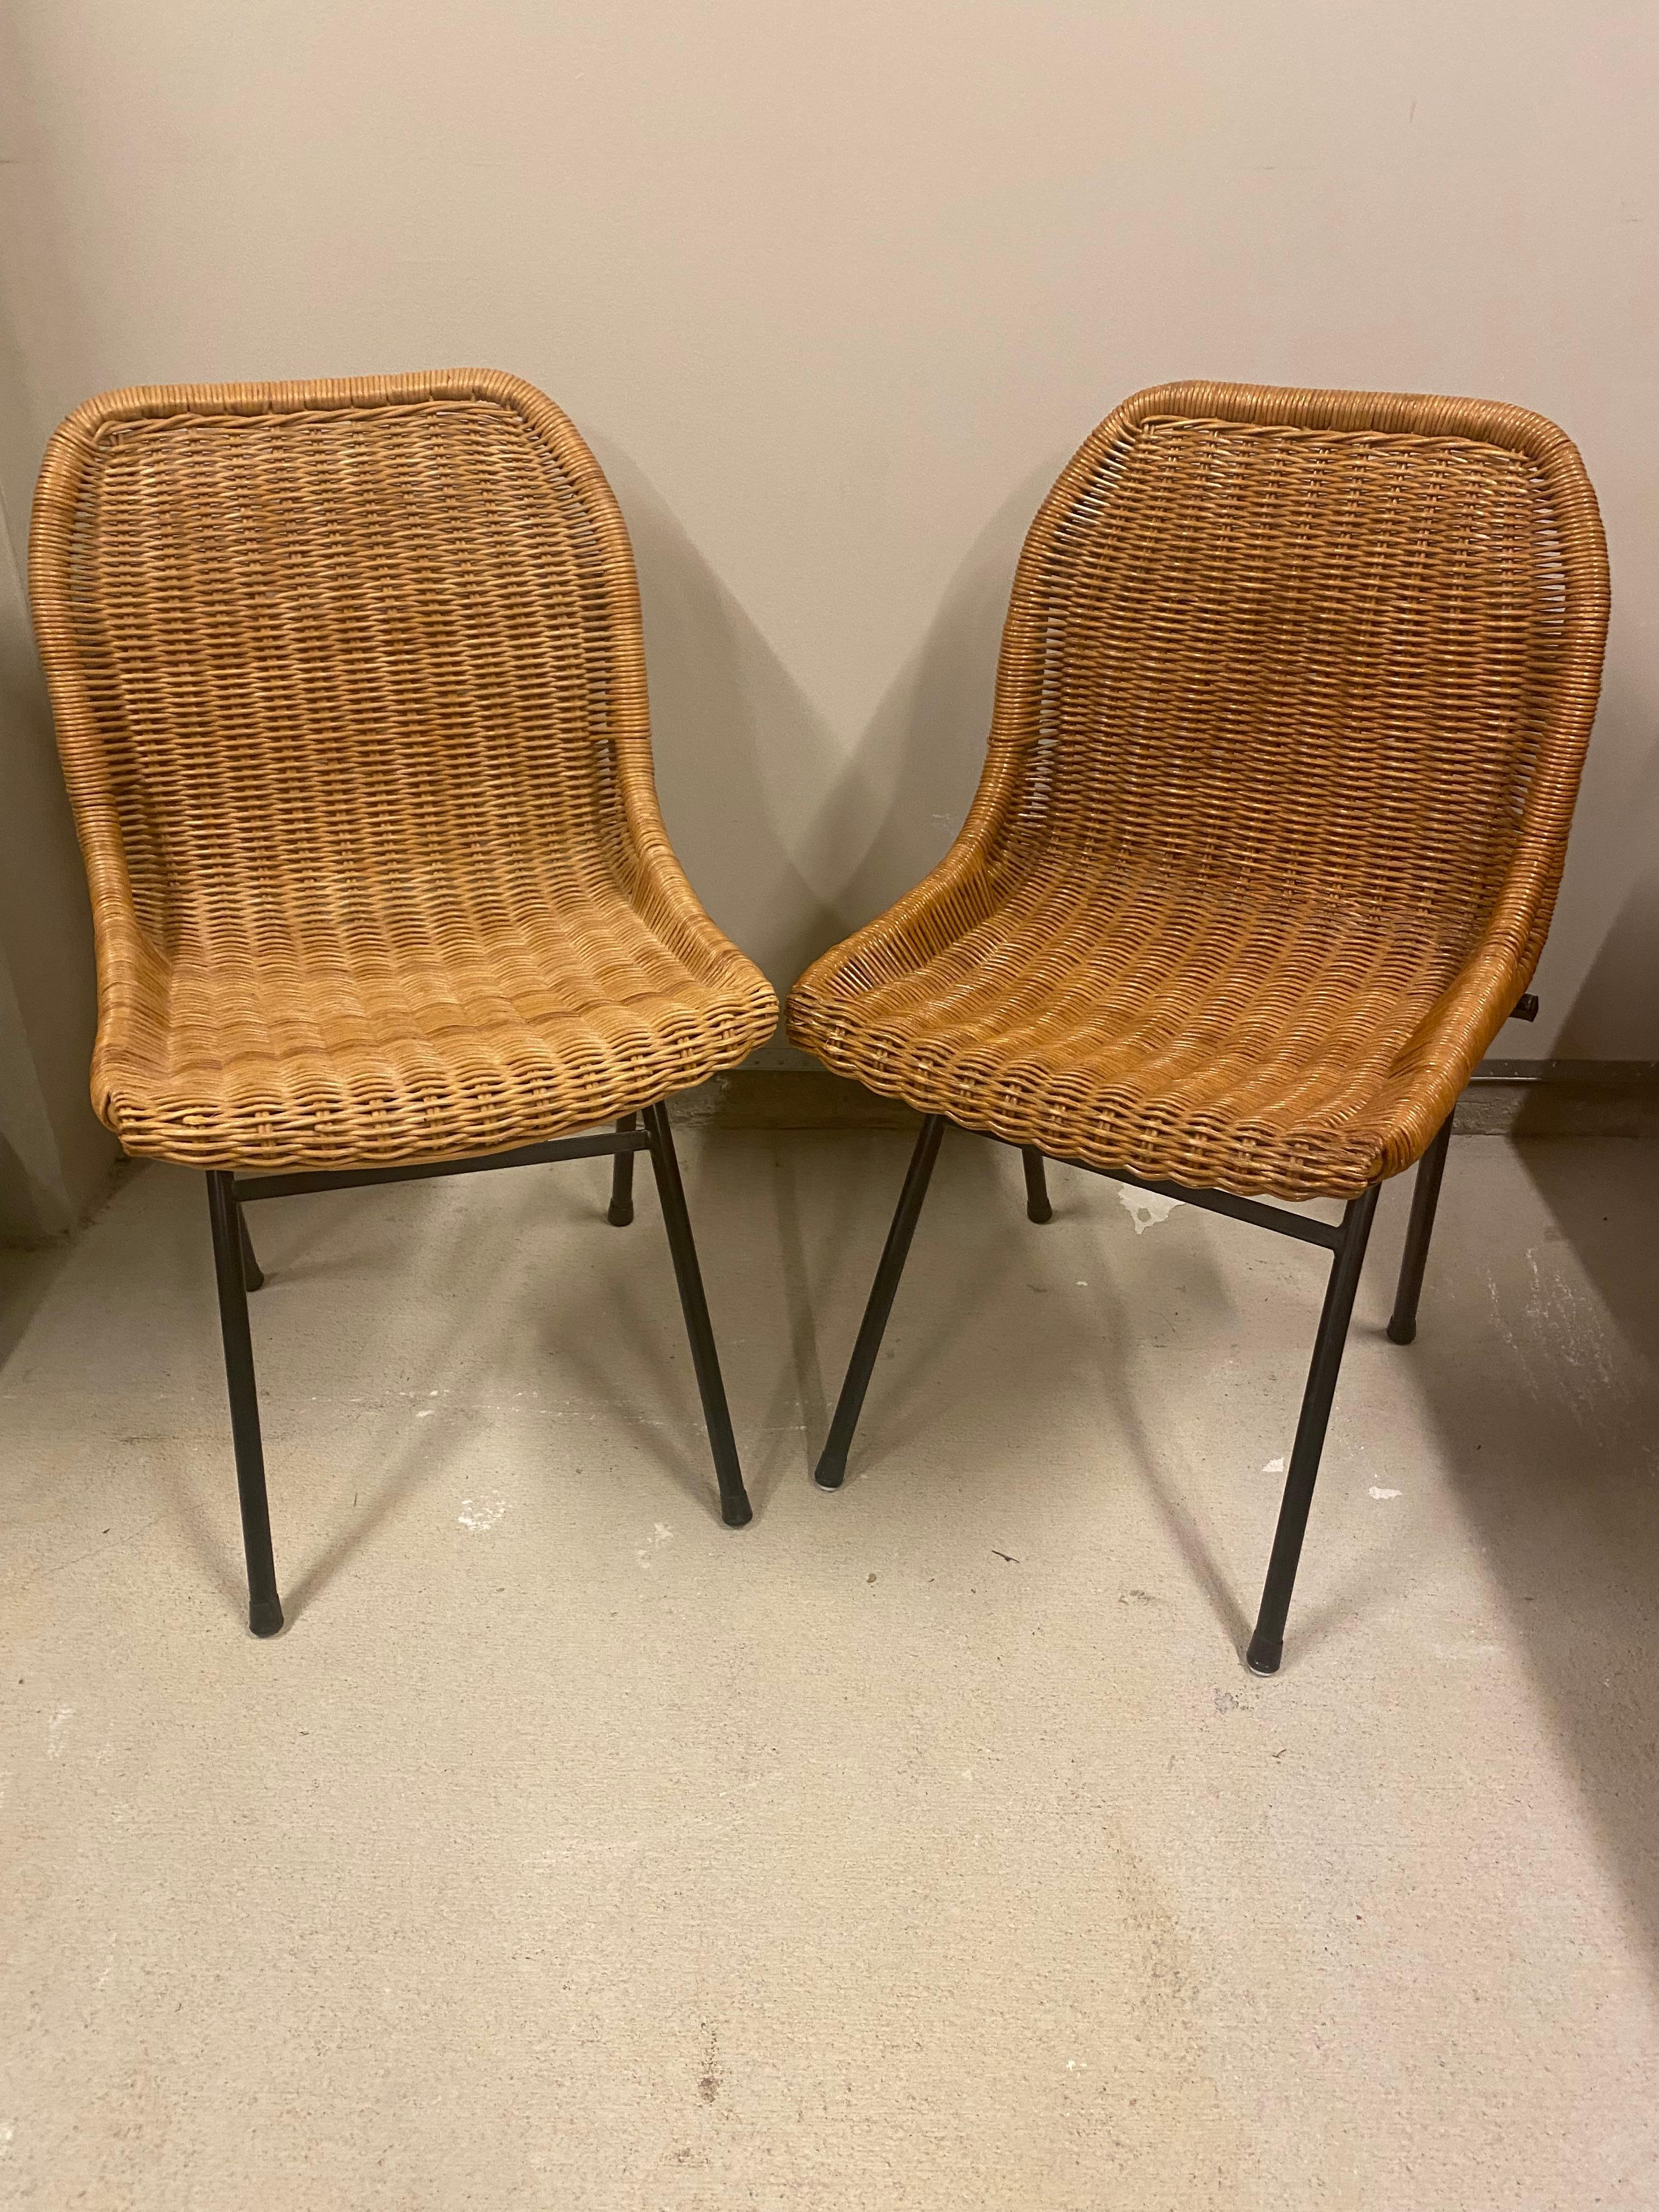 Powder-Coated Pair of Rattan or Wicker Chairs, Dirk van Sliedregt, NL, 1960's